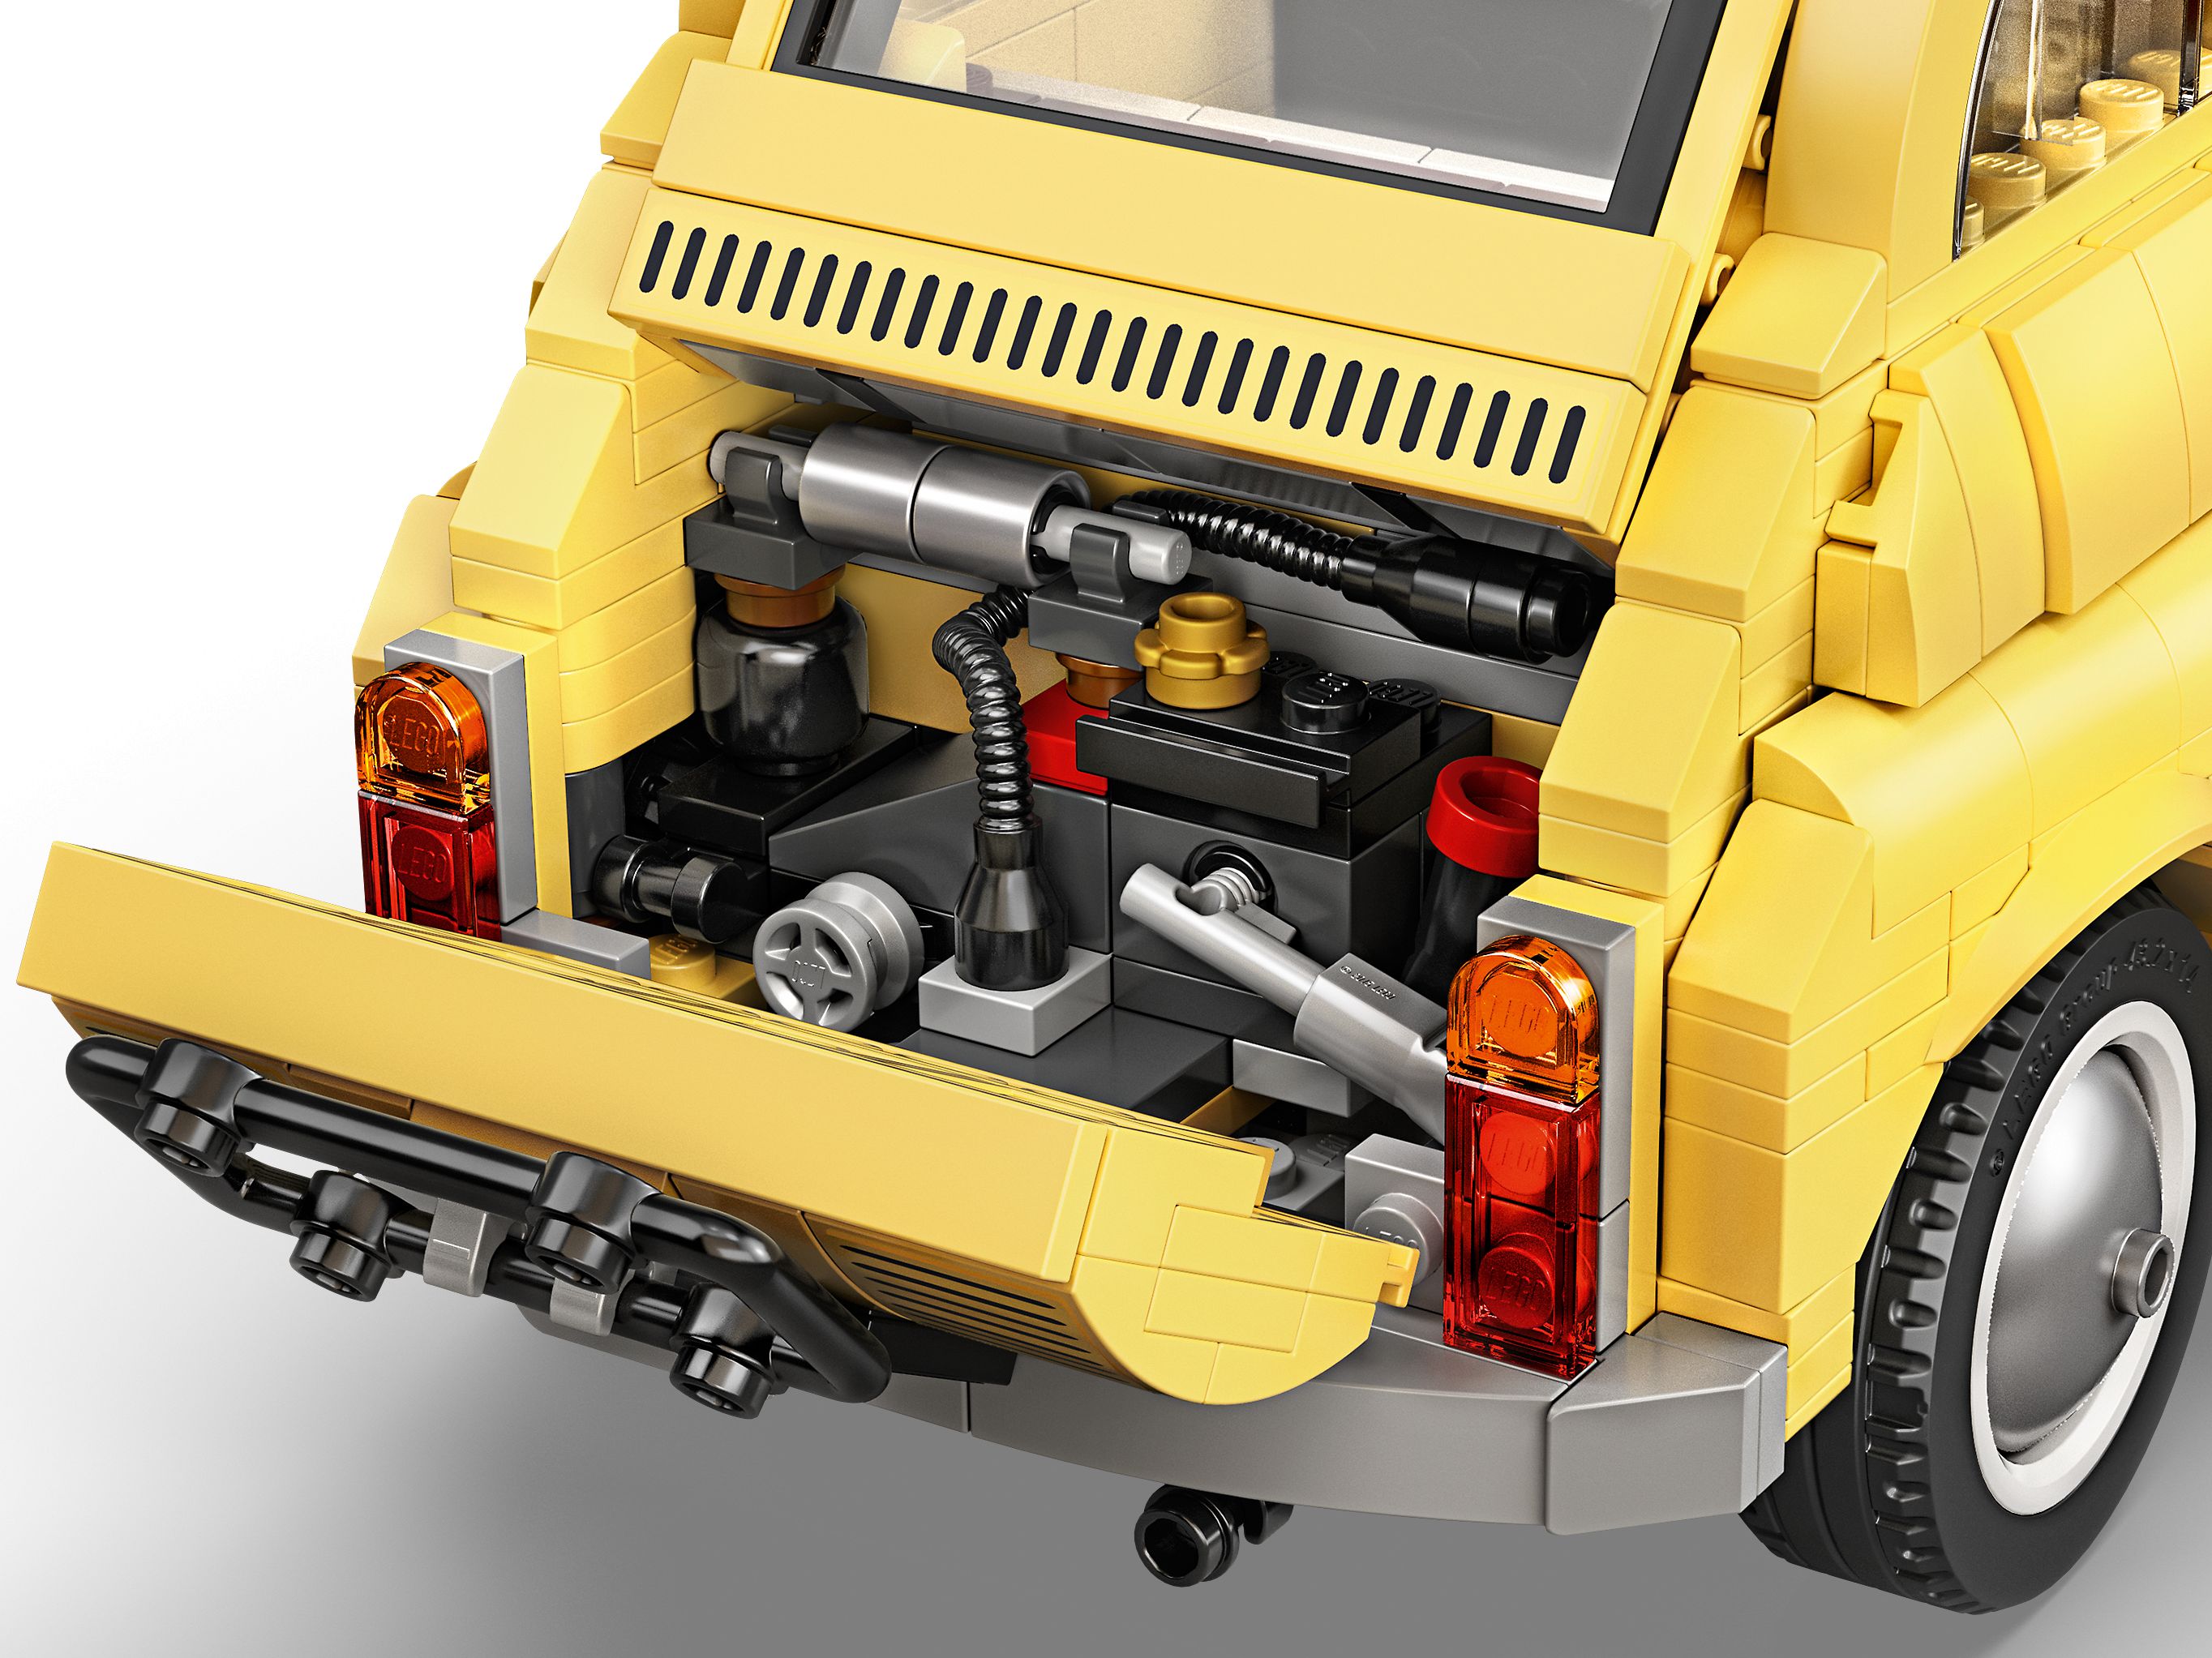 LEGO Advanced Models 10271 gelber Fiat 500 LEGO_10271_alt31.jpg